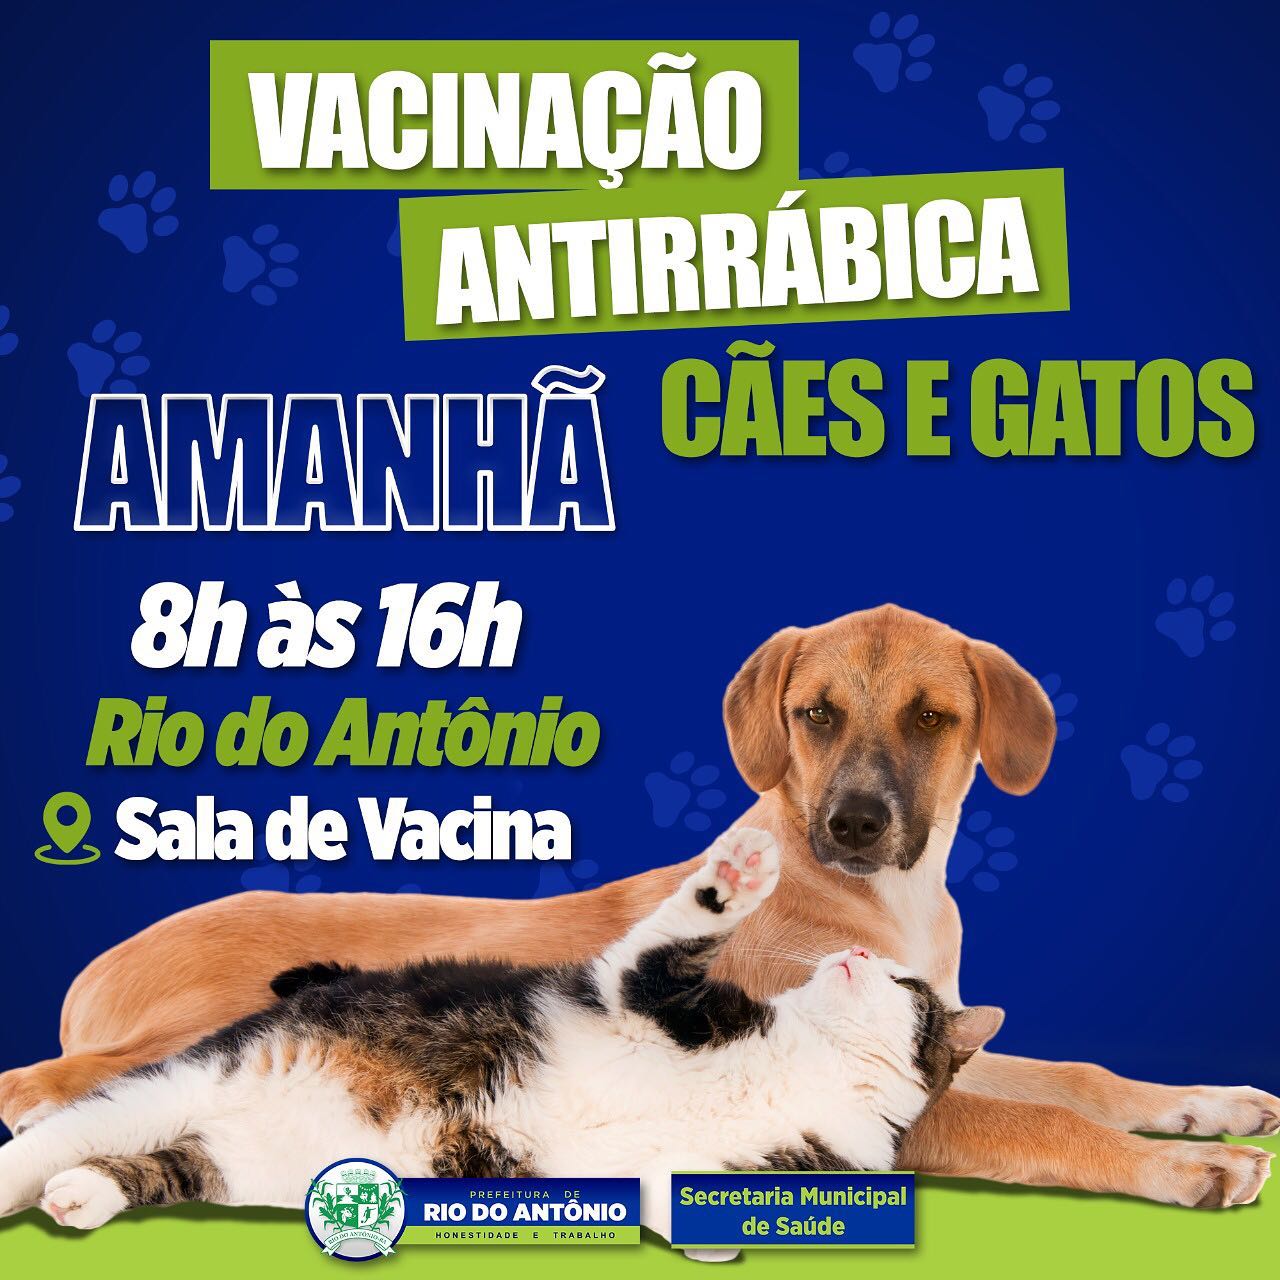 Vacinação Antirrábica acontecerá nesta terça-feira em Rio do Antônio